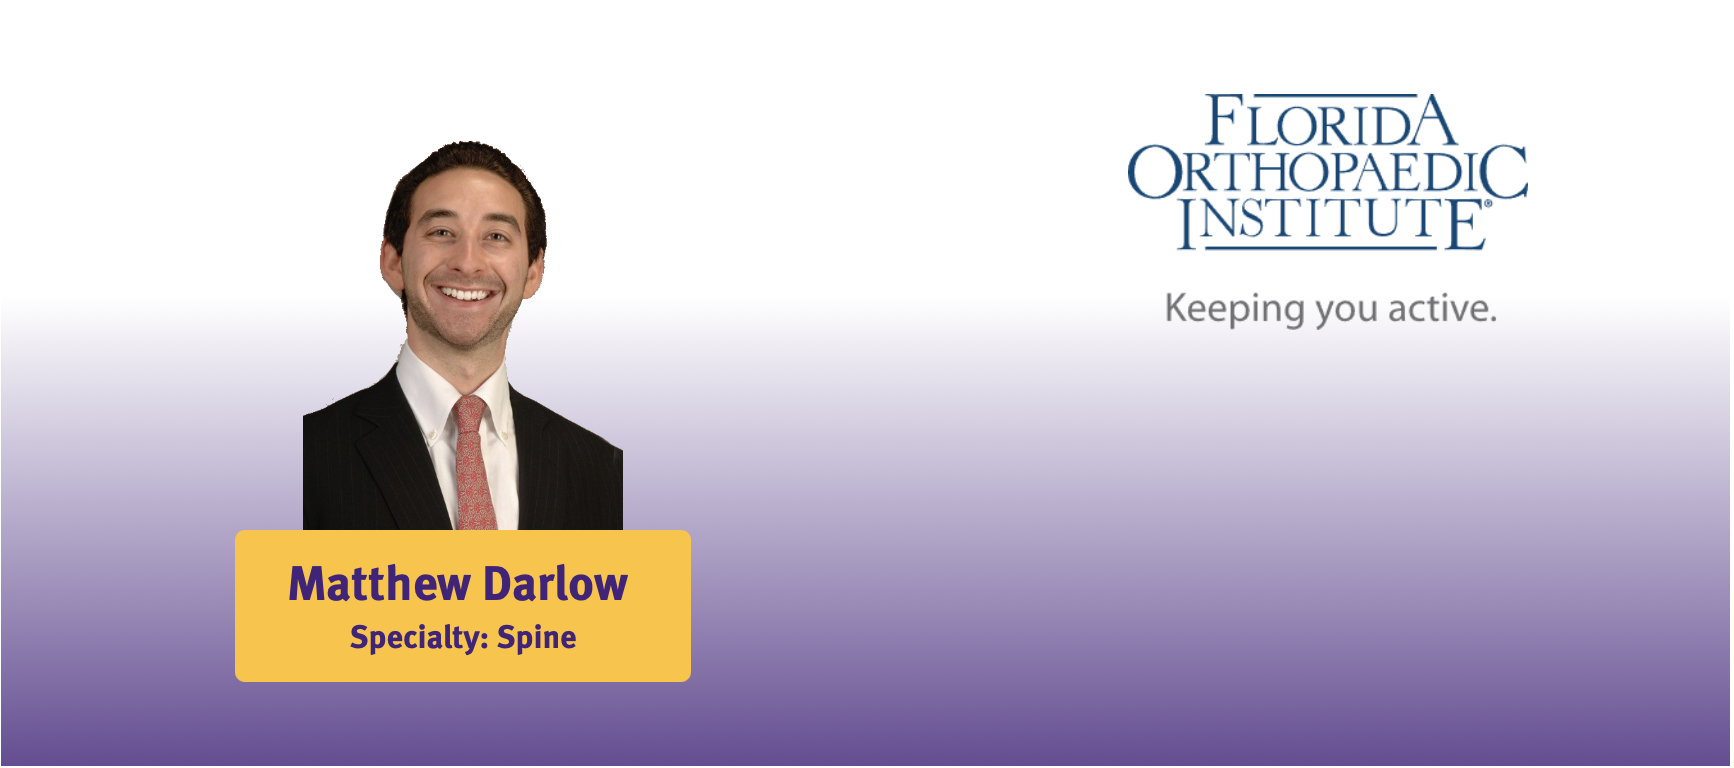 Matthew Darlow Fellowship Match